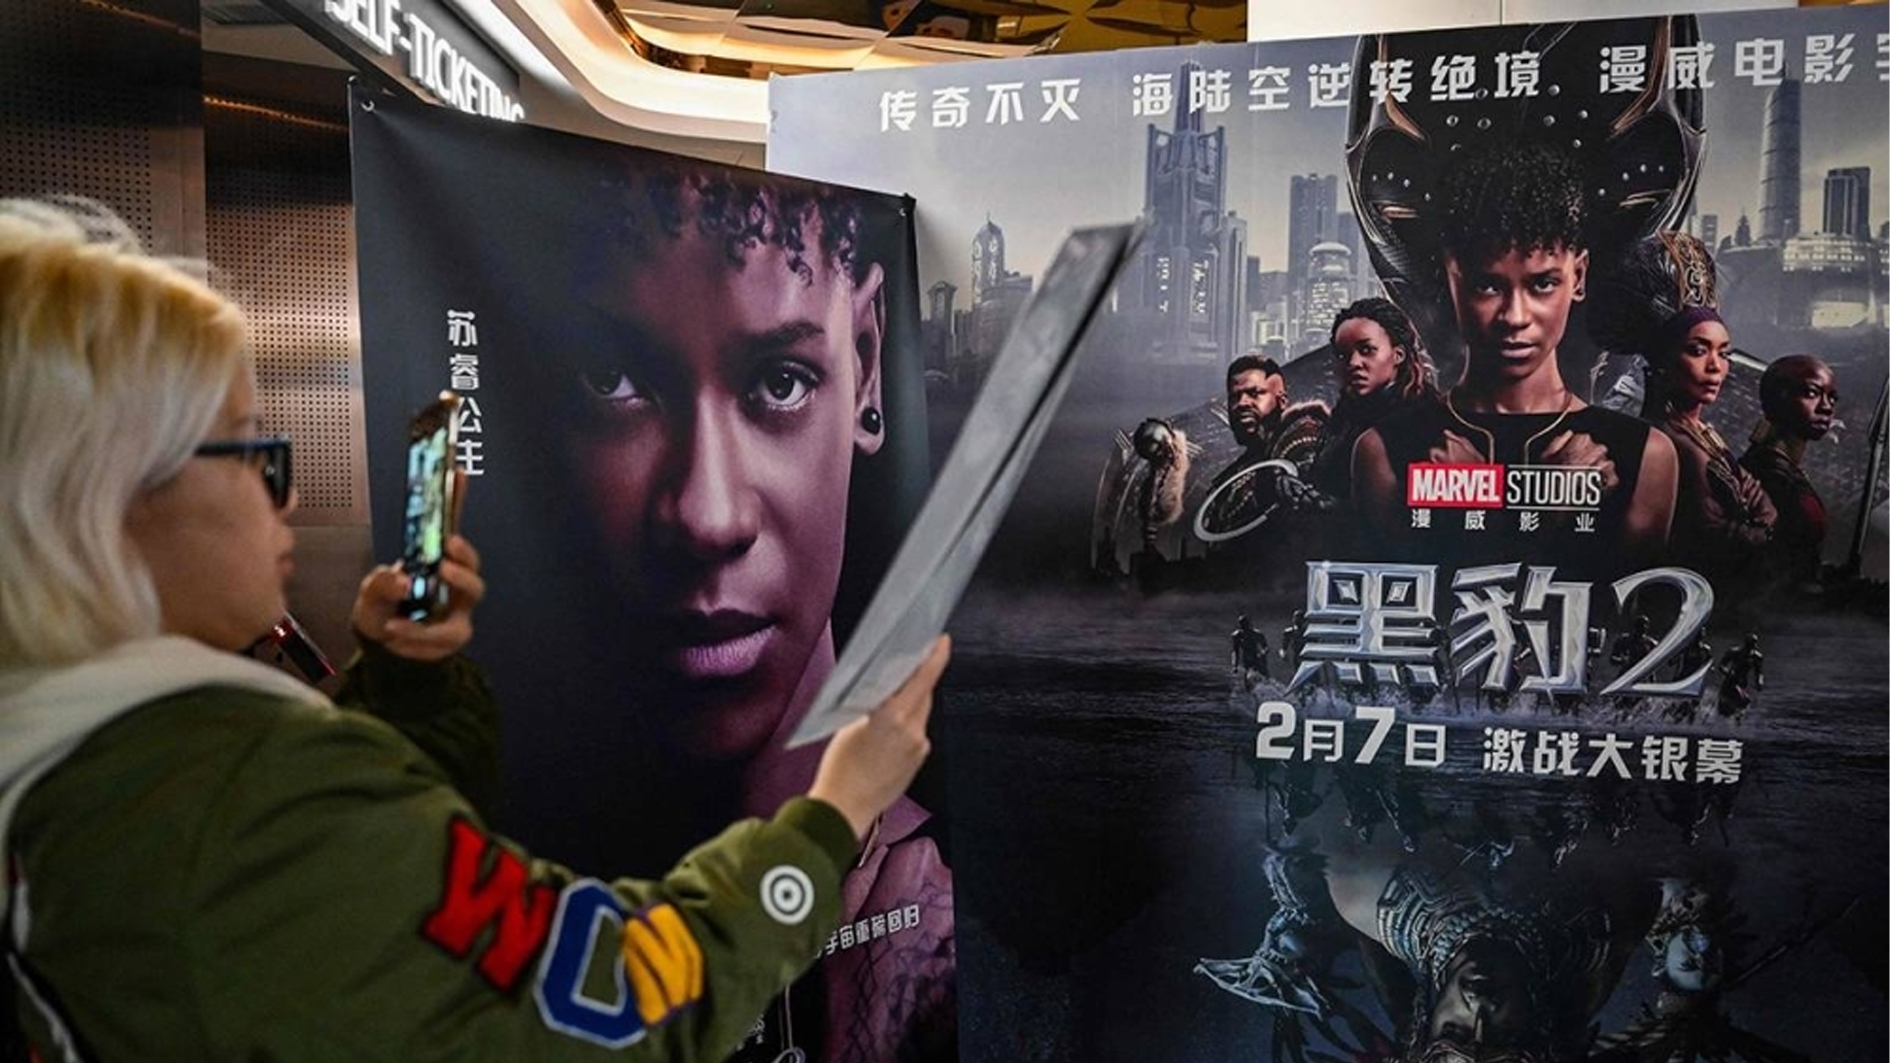 شابة تلتقط صورة لملصق فيلم «بلاك بانثر: واكاندا فوريفر» في إحدى دور السينما في شنغهاي